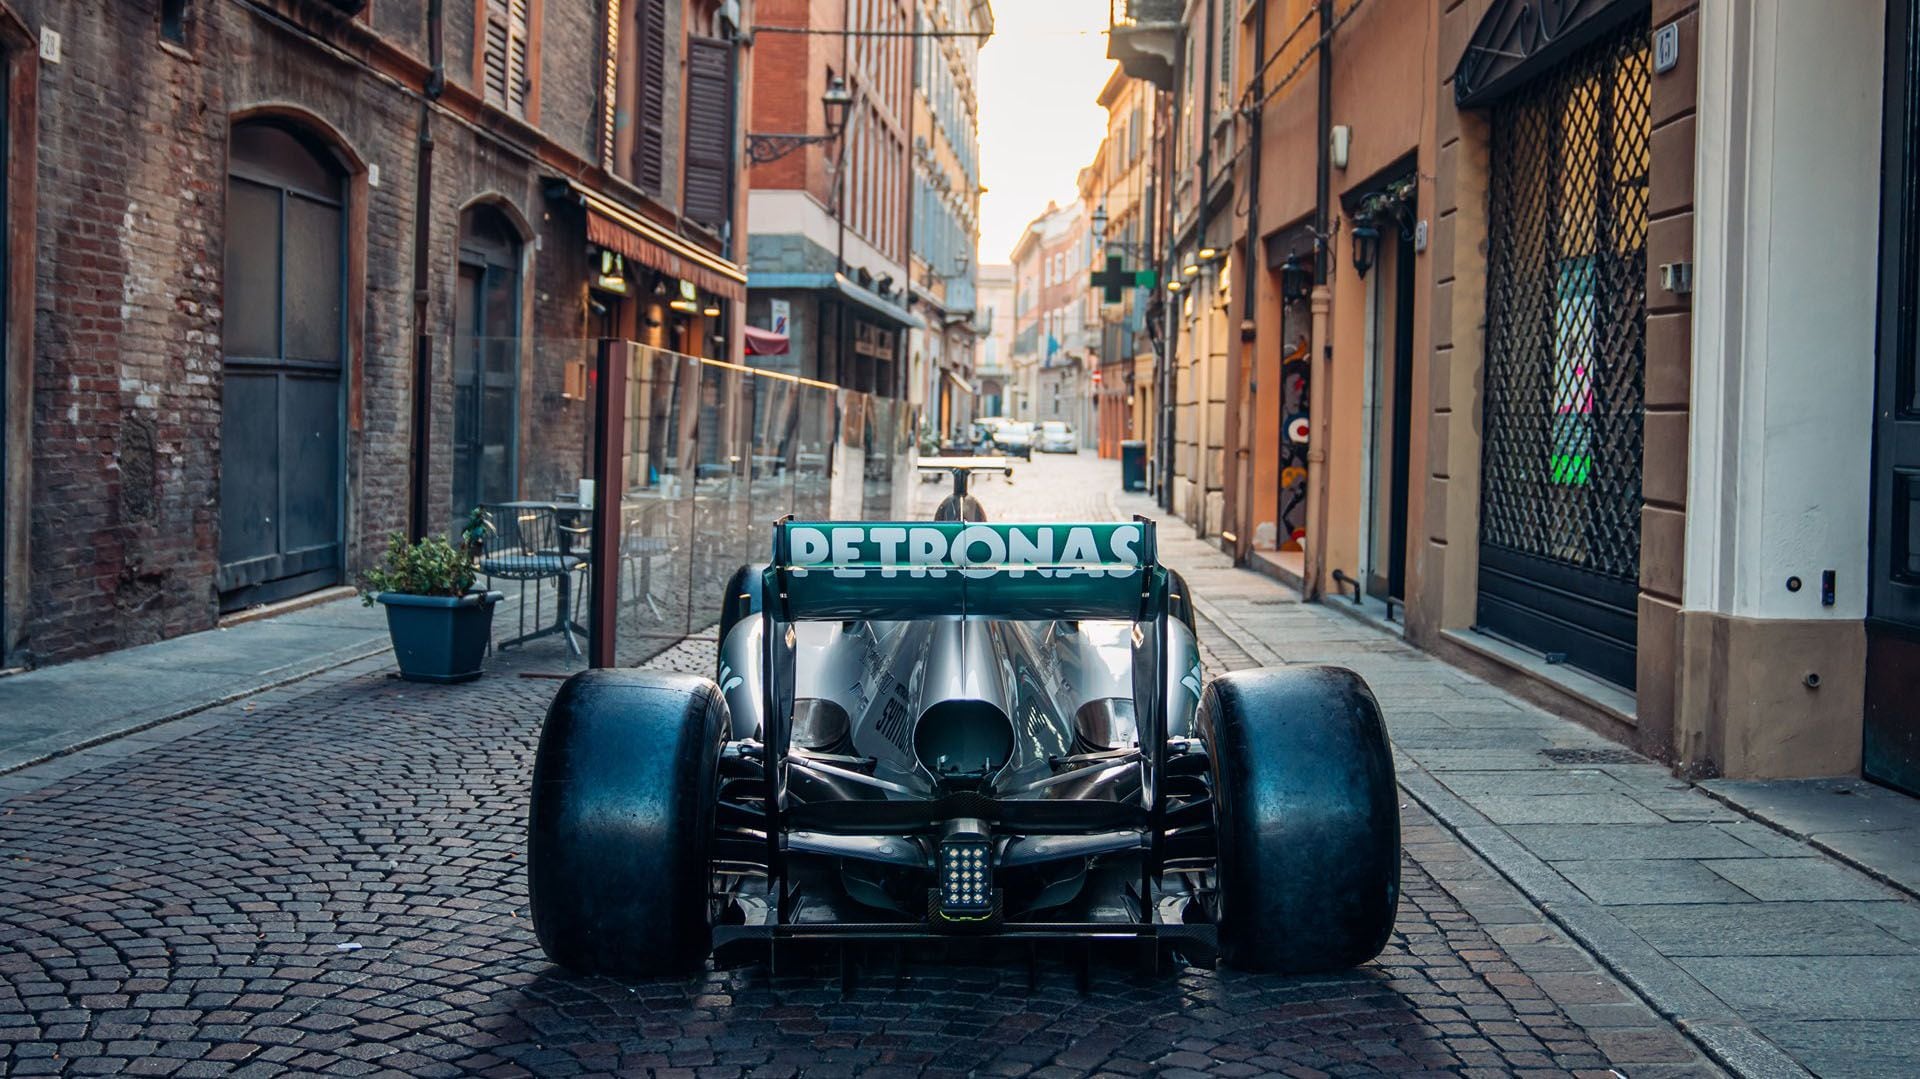 Se vendió un Mercedes de Fórmula 1 que usó Lewis Hamilton